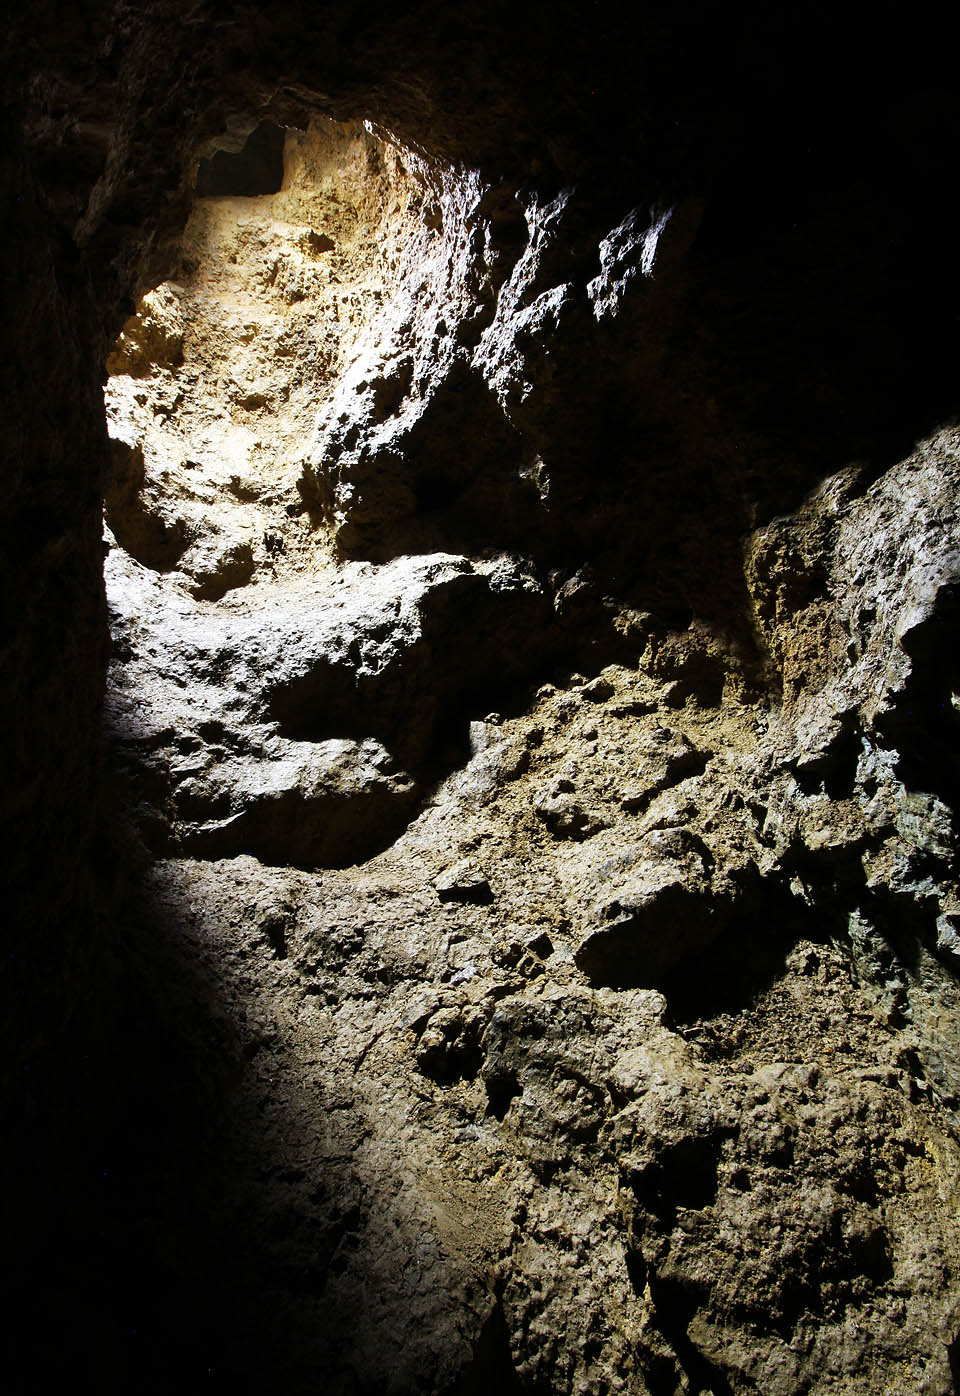 Některé chodby vedou poměrně strmě vzhůru nebo dolů, jako by snad štoly ani nehloubili lidé, ale sama příroda. Snad byla kdysi jejím základem vápencová jeskyně?